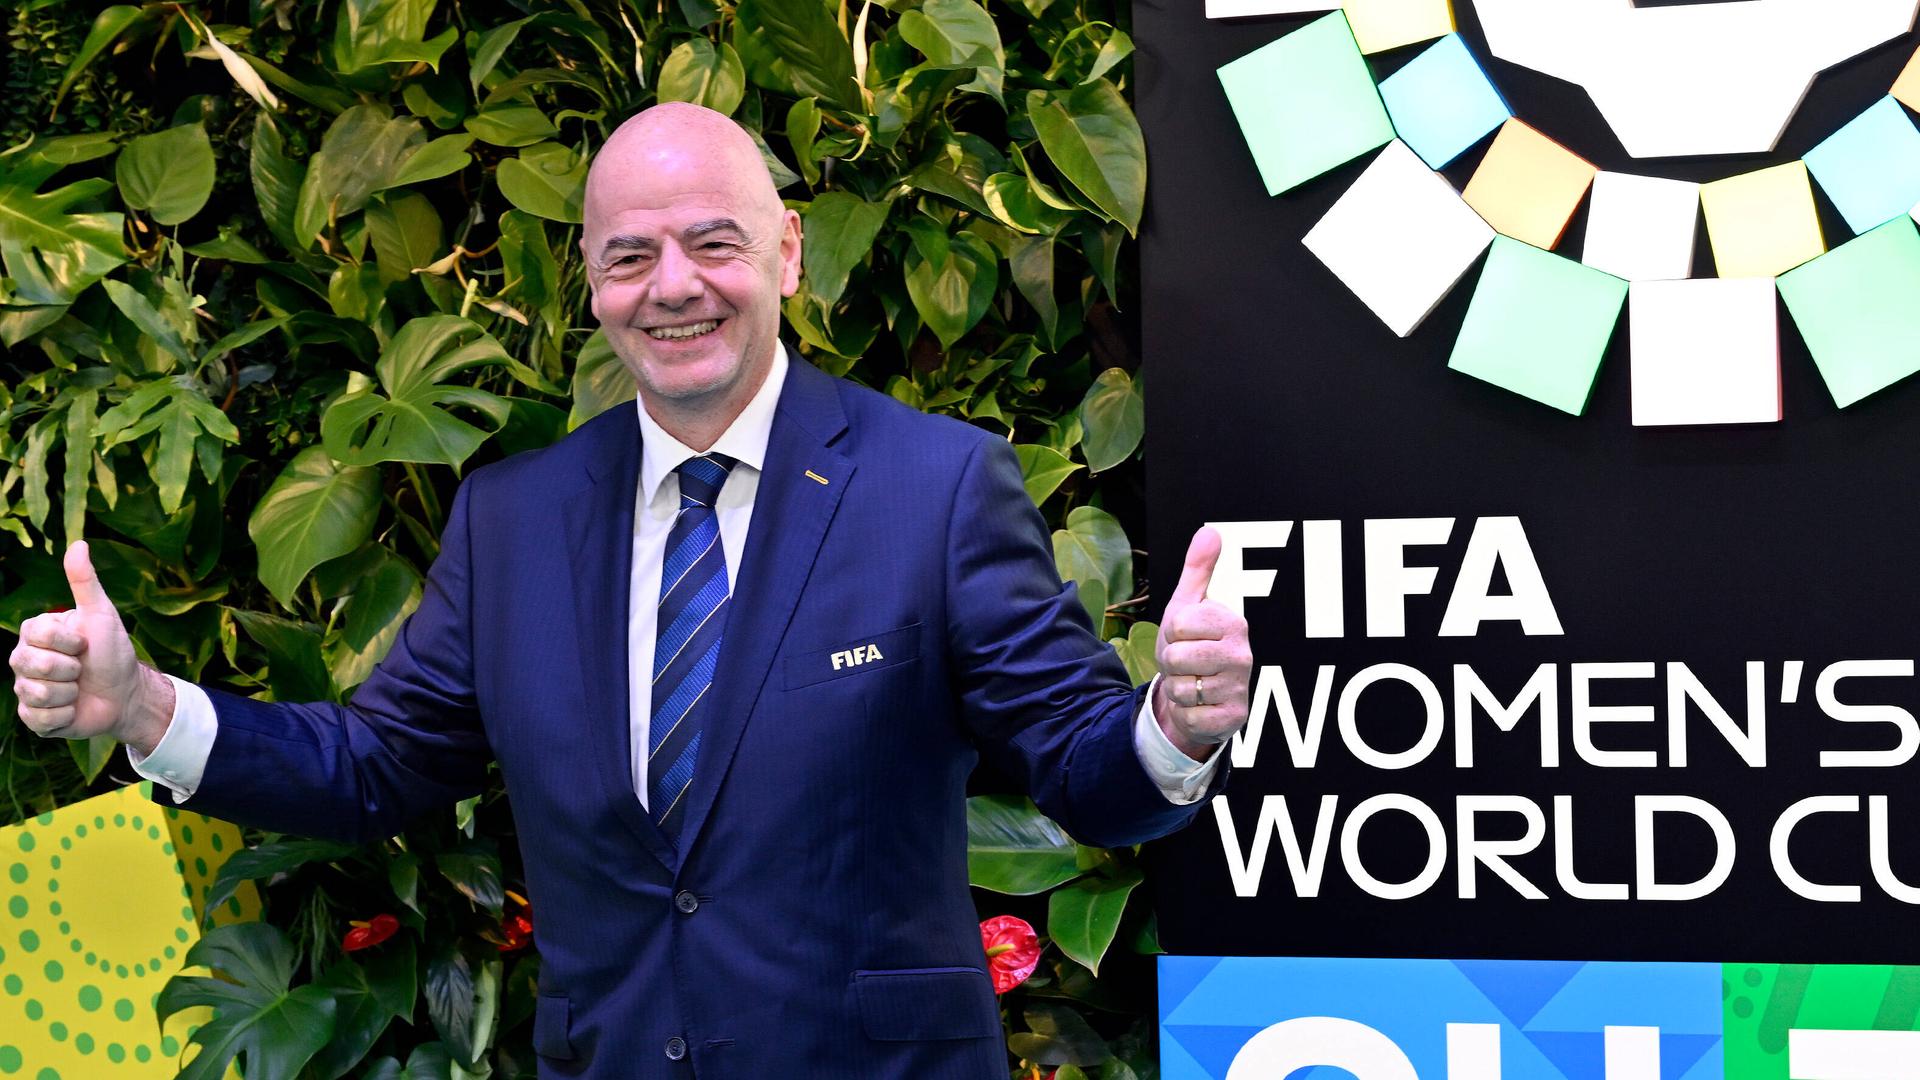 Fußball - Empörung über FIFA-Pläne: Sponsoring aus Saudi-Arabien für Frauen-WM?